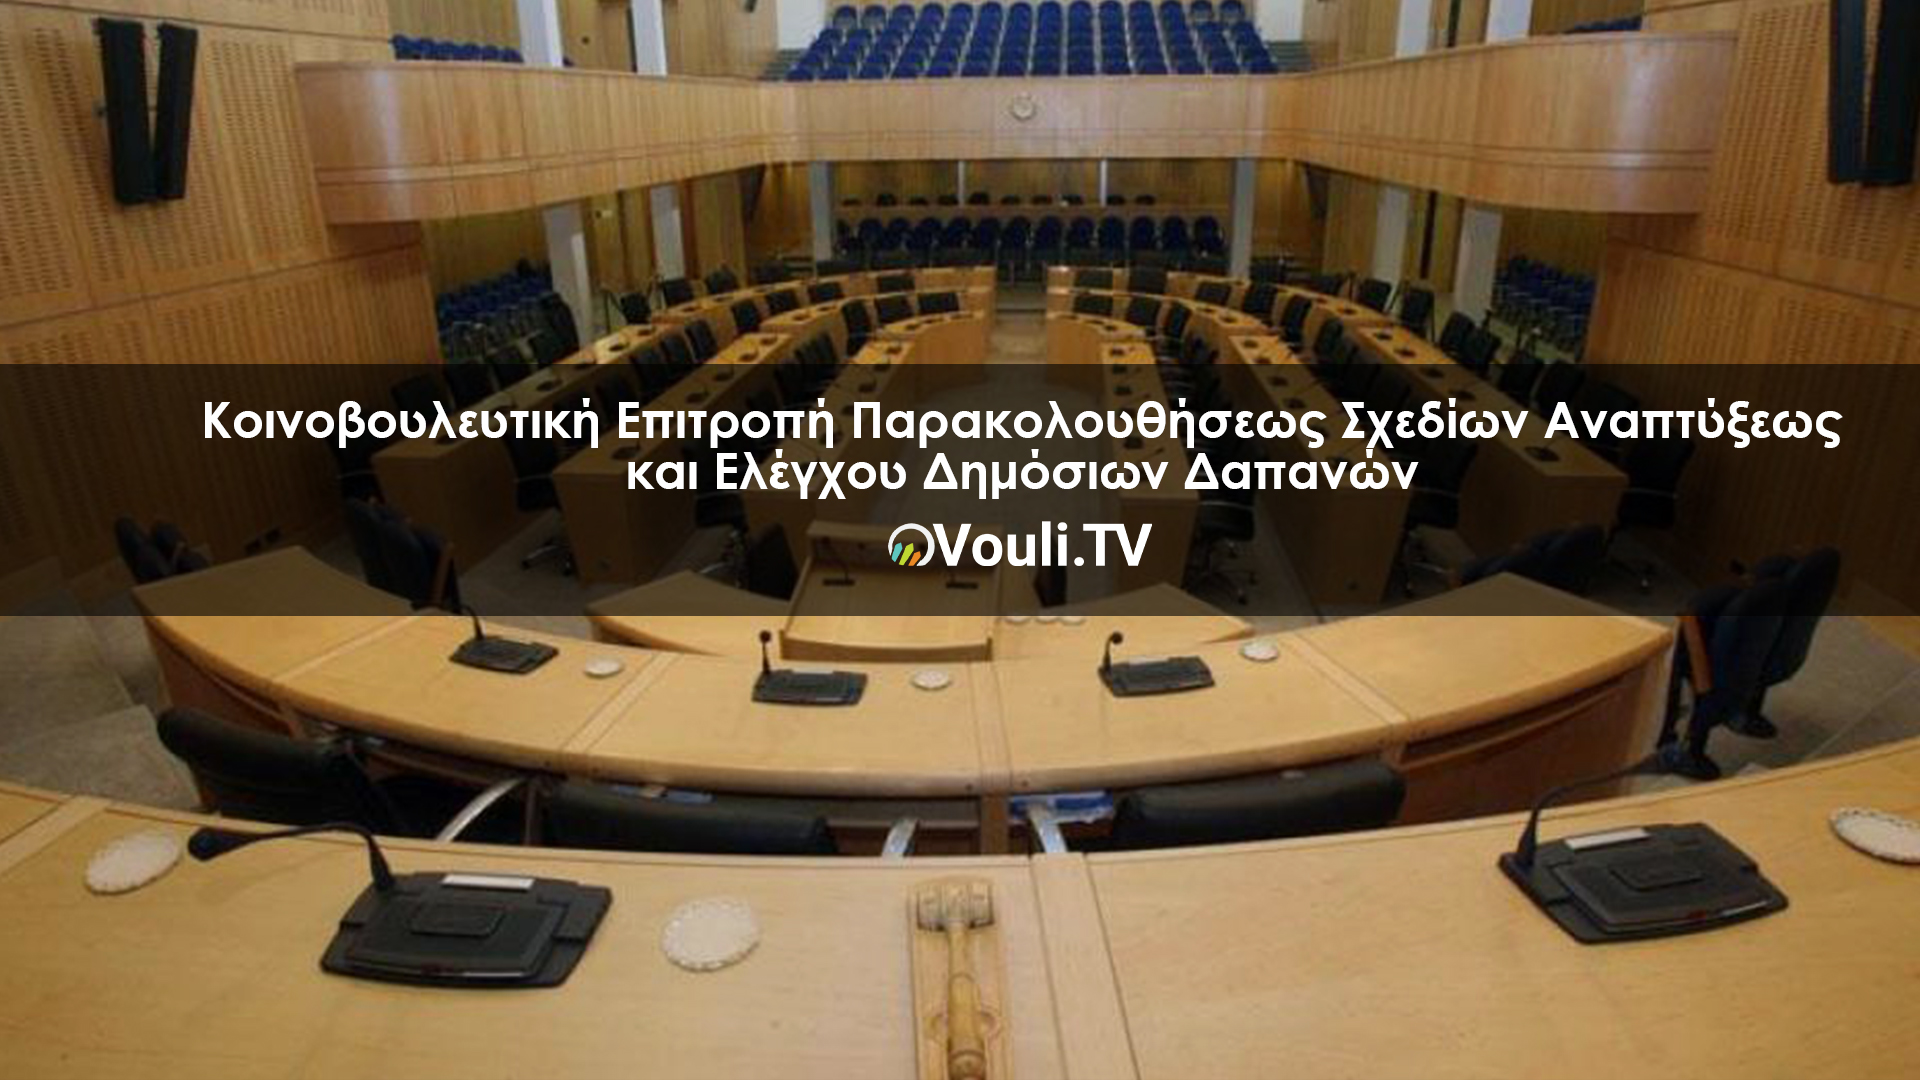 Κοινοβουλευτική Επιτροπή Παρακολουθήσεως Σχεδίων Αναπτύξεως και Ελέγχου Δημόσιων Δαπανών | Vouli report 19/05/2022